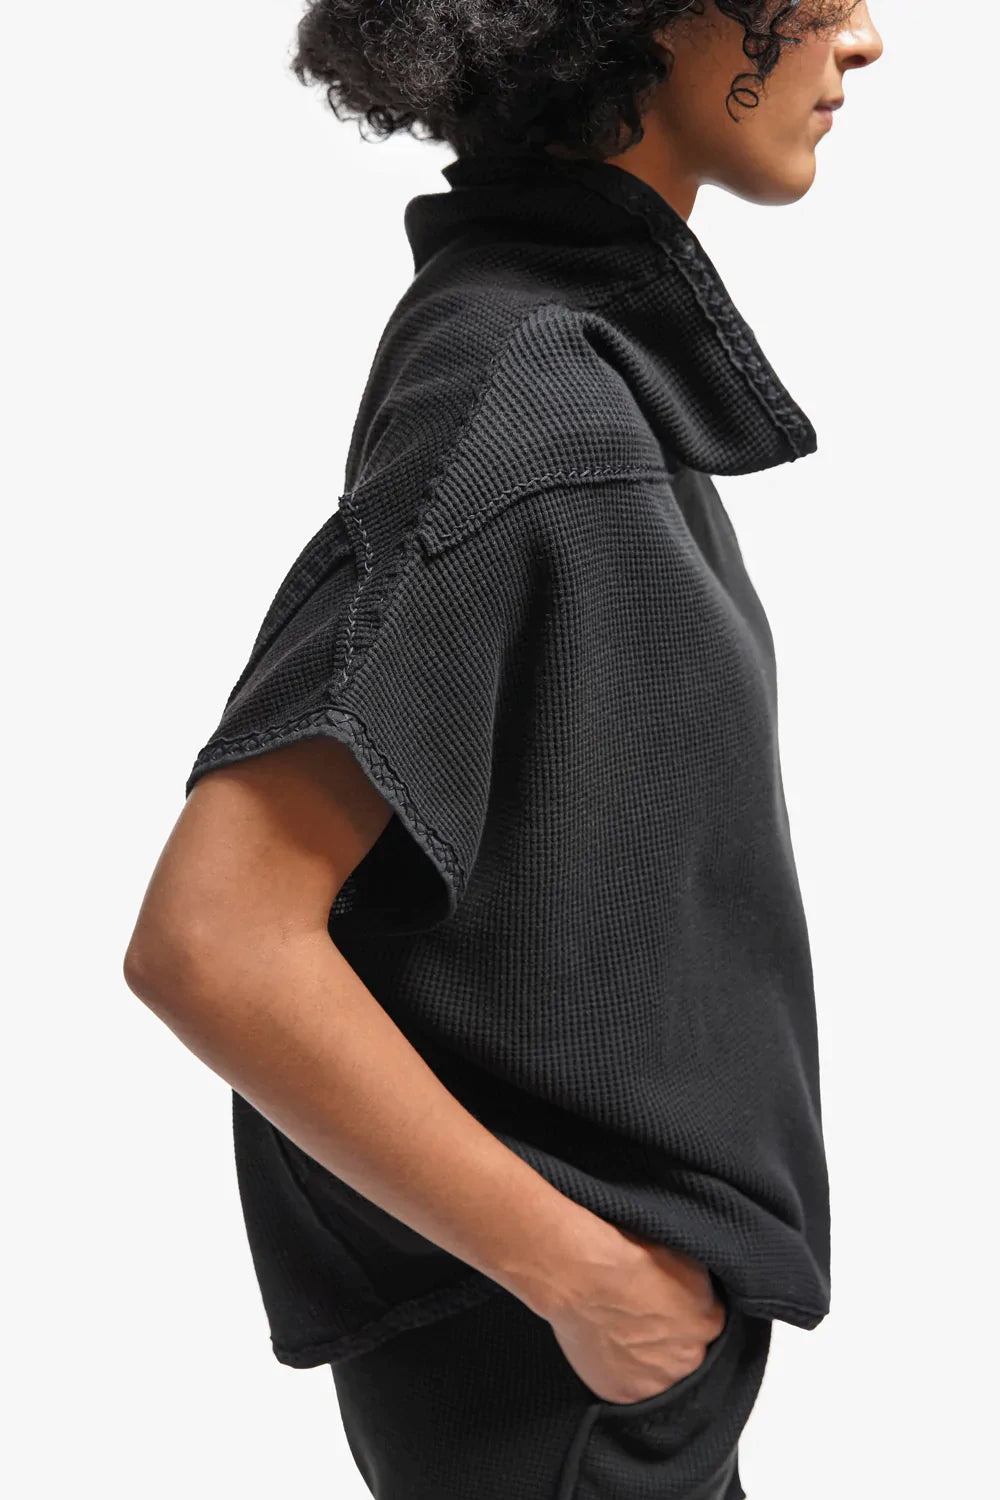 Artisan Designed womens short sleeve Waffle Sweatshirt in black organic waffle knit zero waste fabrics.